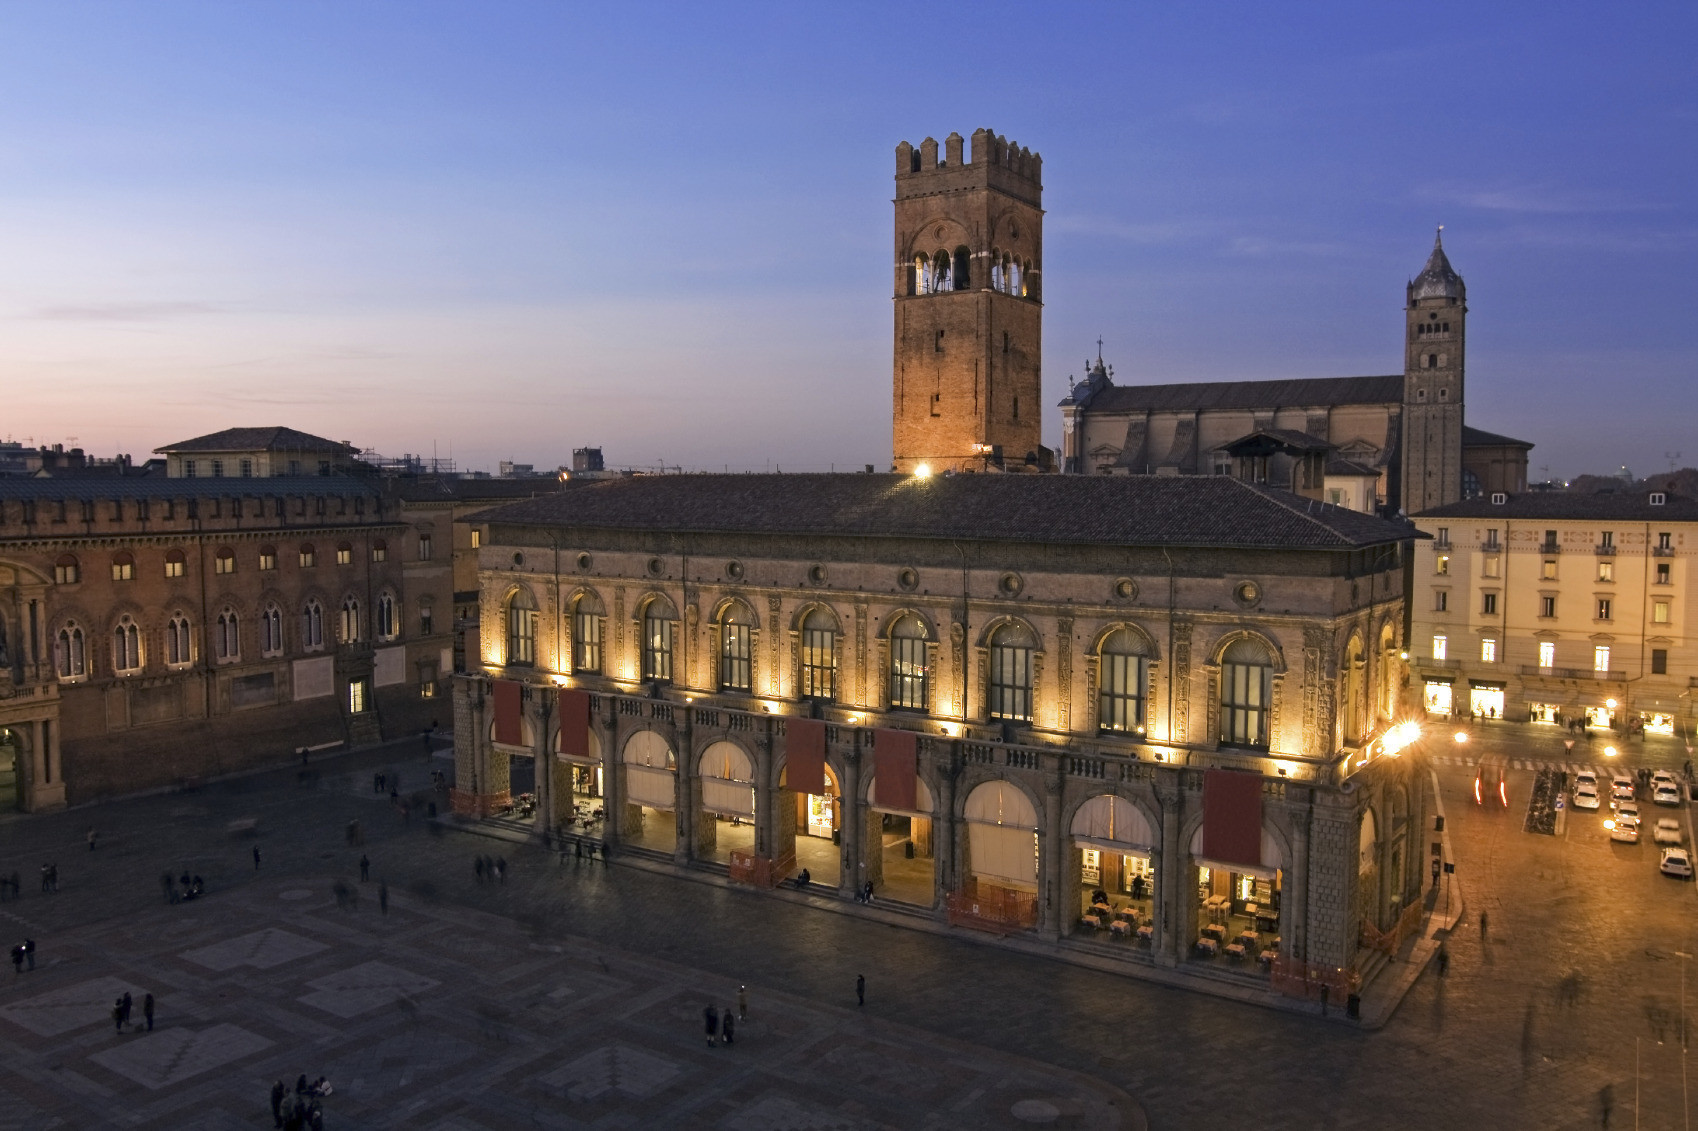 Historical building in Piazza Maggiore, Bologna